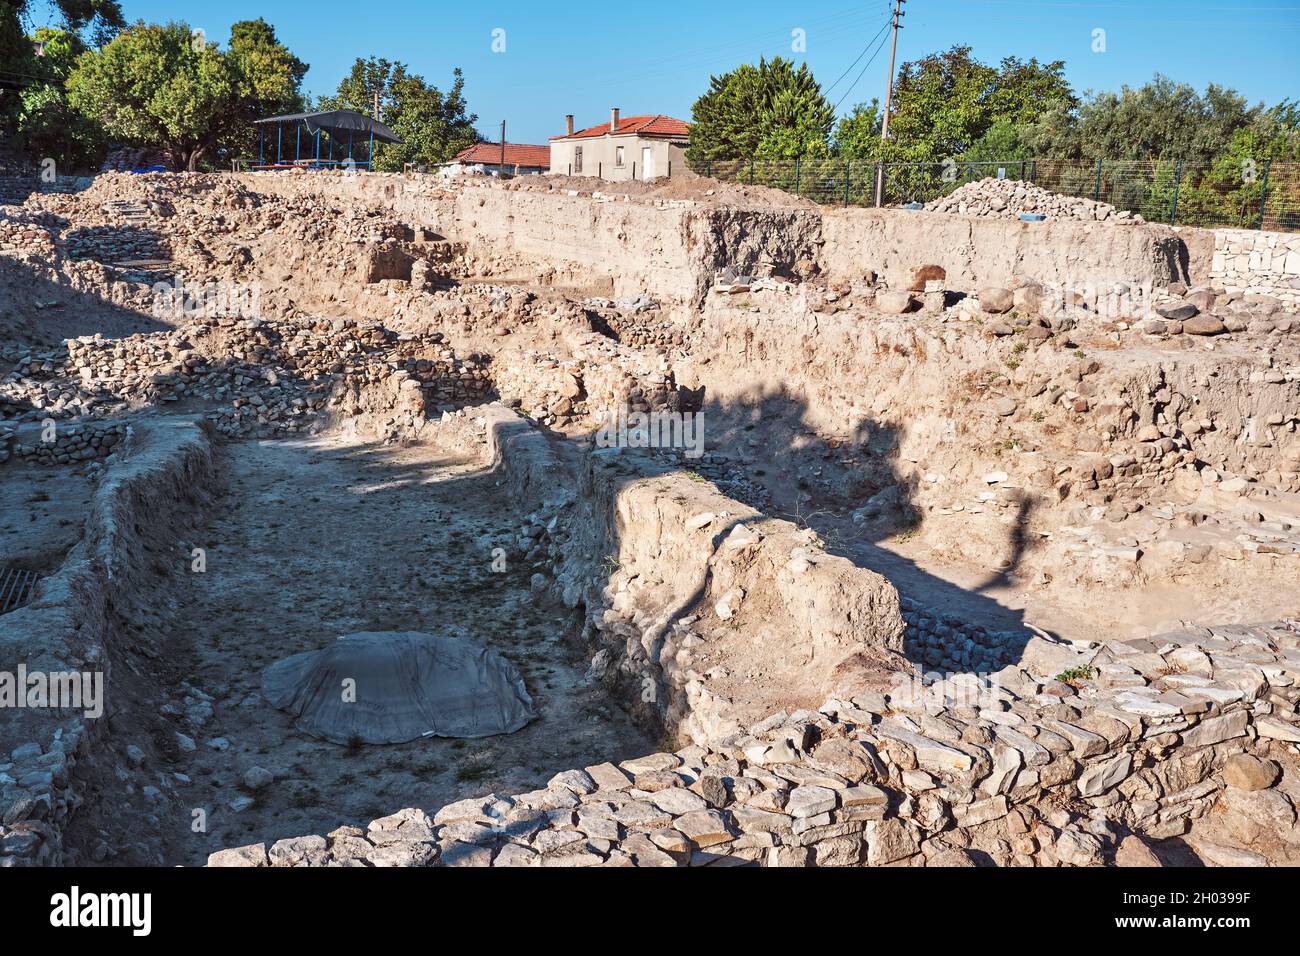 Urla, Turchia - Settembre, 2021: Sito archeologico di scavo dell'antica città preistorica dell'età del bronzo Liman Tepe o Limantepe a Urla, Izmir, Turco Foto Stock